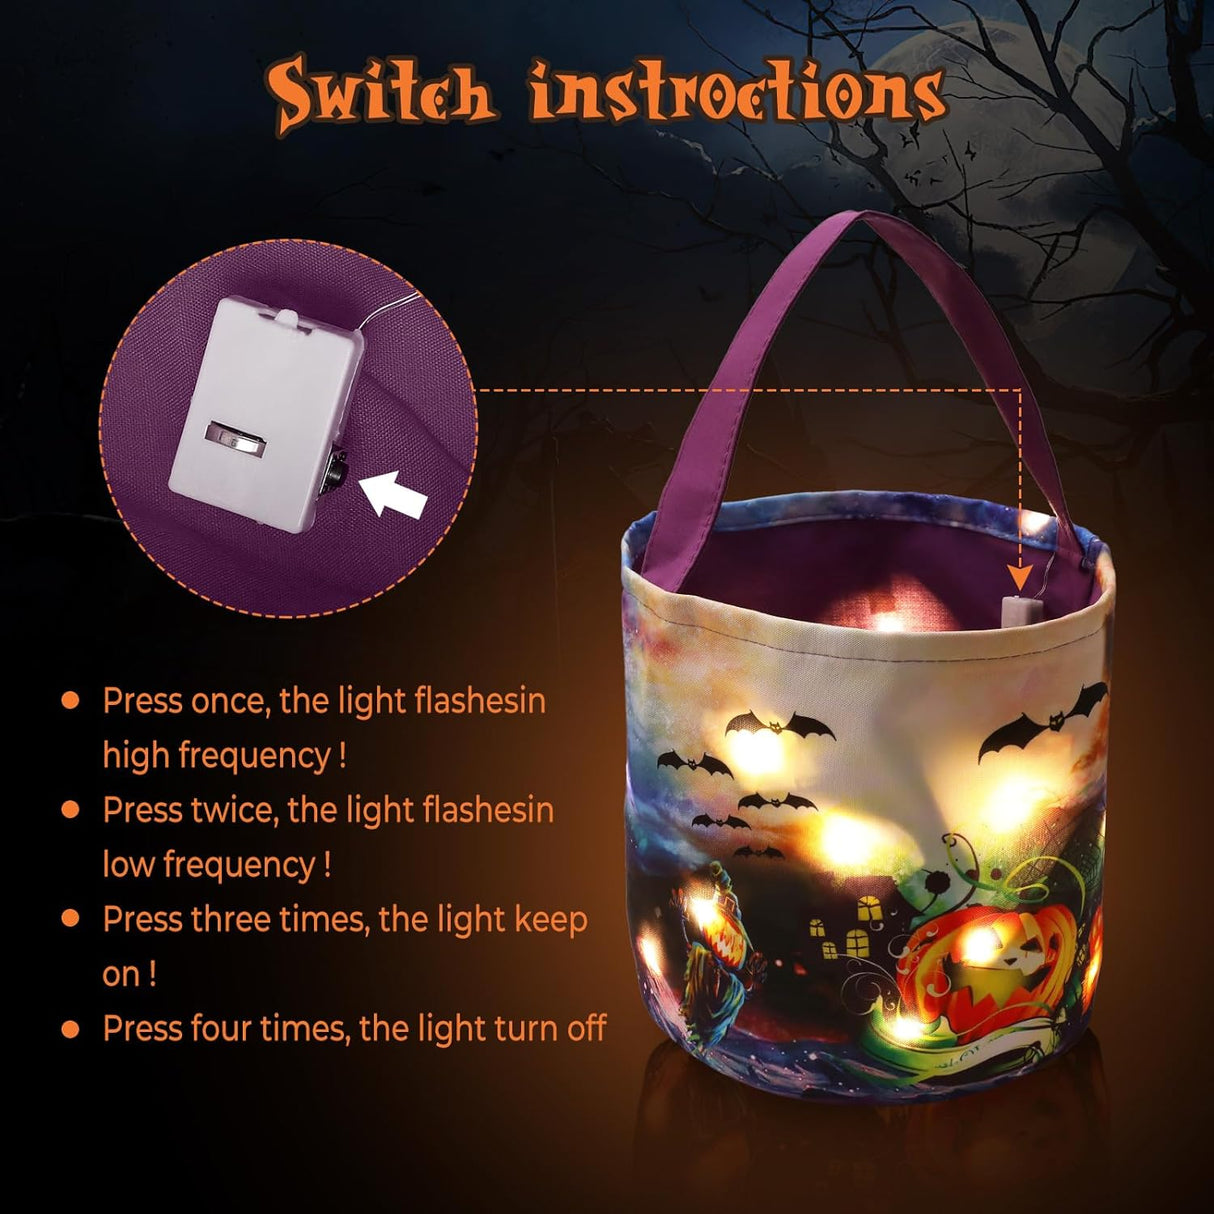 2 Stück Halloween Süßigkeiten Taschen Mit LED Lichter, Trick or Treat Behandelt Taschen, Leuchtende Süßigkeitentaschen Für Kinder Halloween Gastgeschenke Dekorationen (Lila)